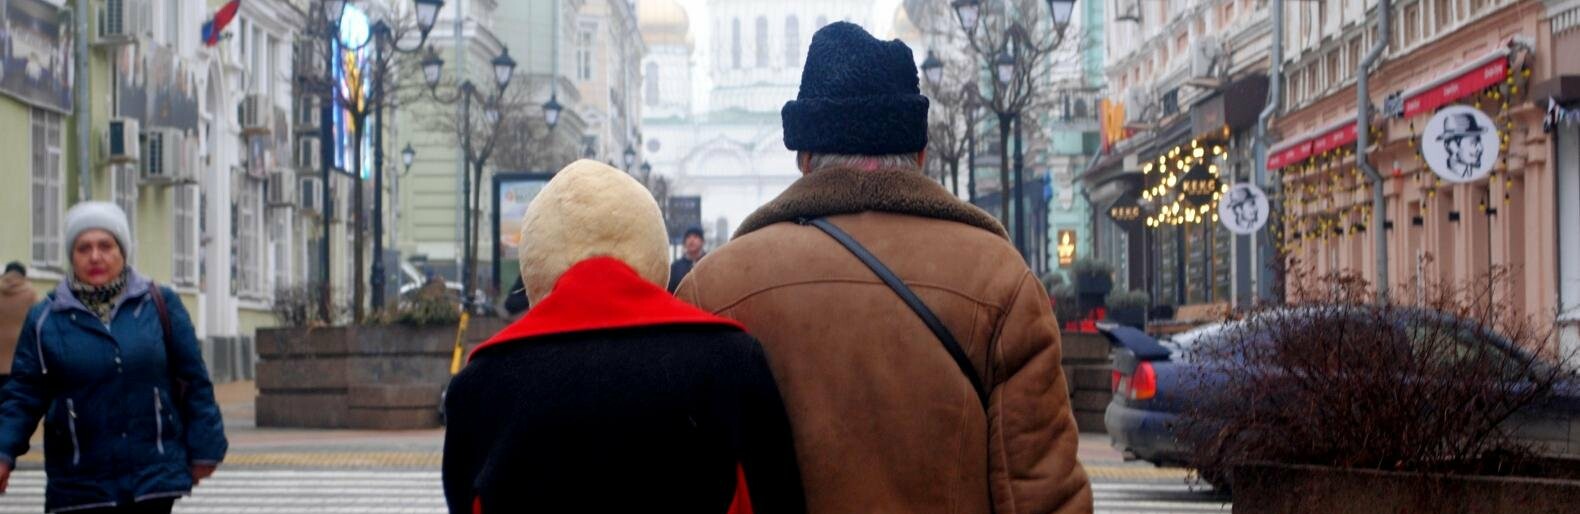 Неработающим пенсионерам Ростовской области повысили пособие по старости на 4,8%